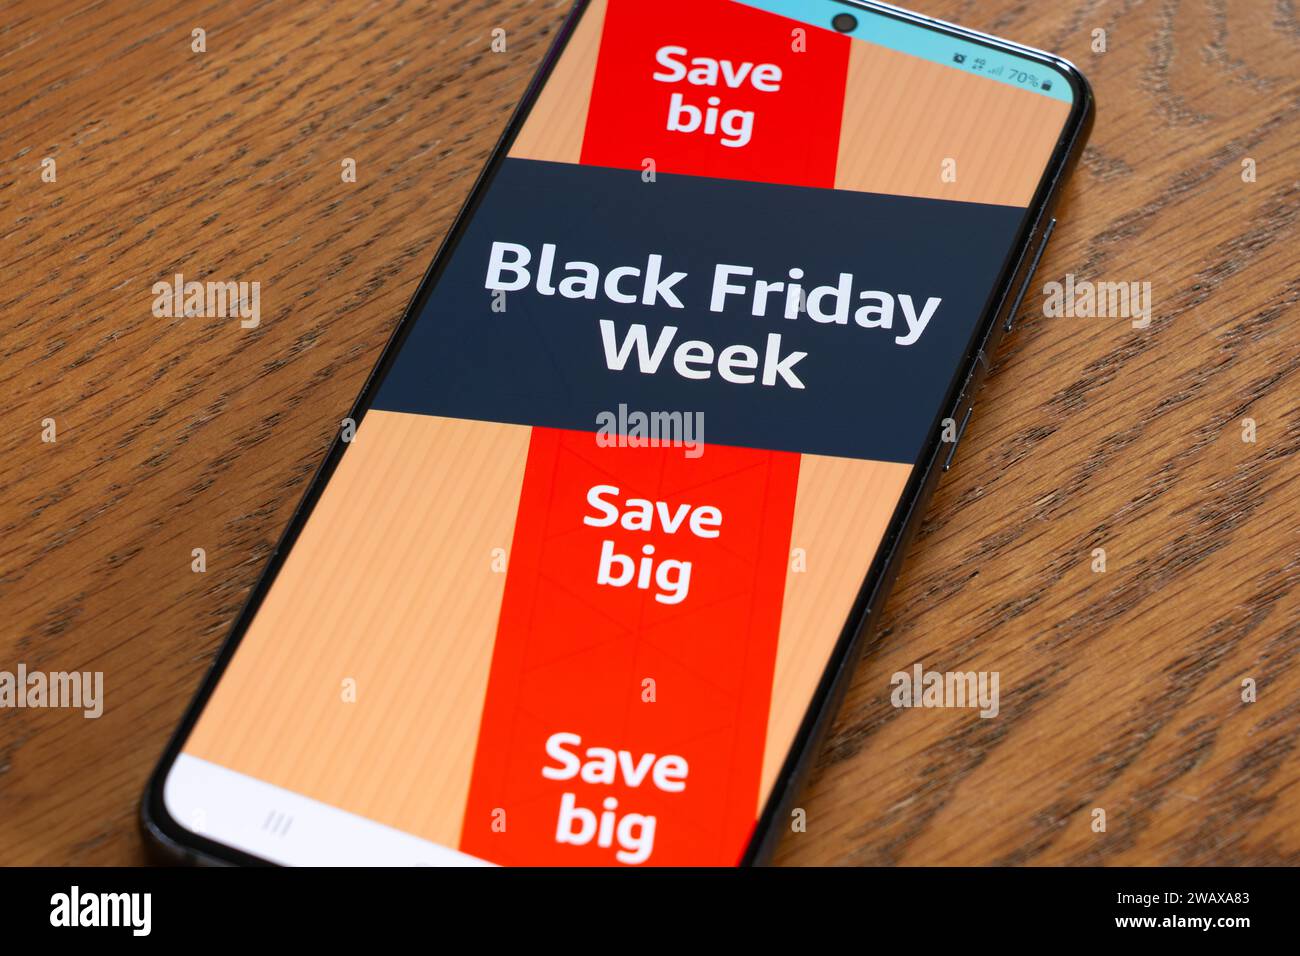 Settimana del Black Friday del 4 novembre, con un banner pubblicitario e una pagina di grande risparmio dall'app di shopping Amazon sullo schermo di uno smartphone, Regno Unito Foto Stock